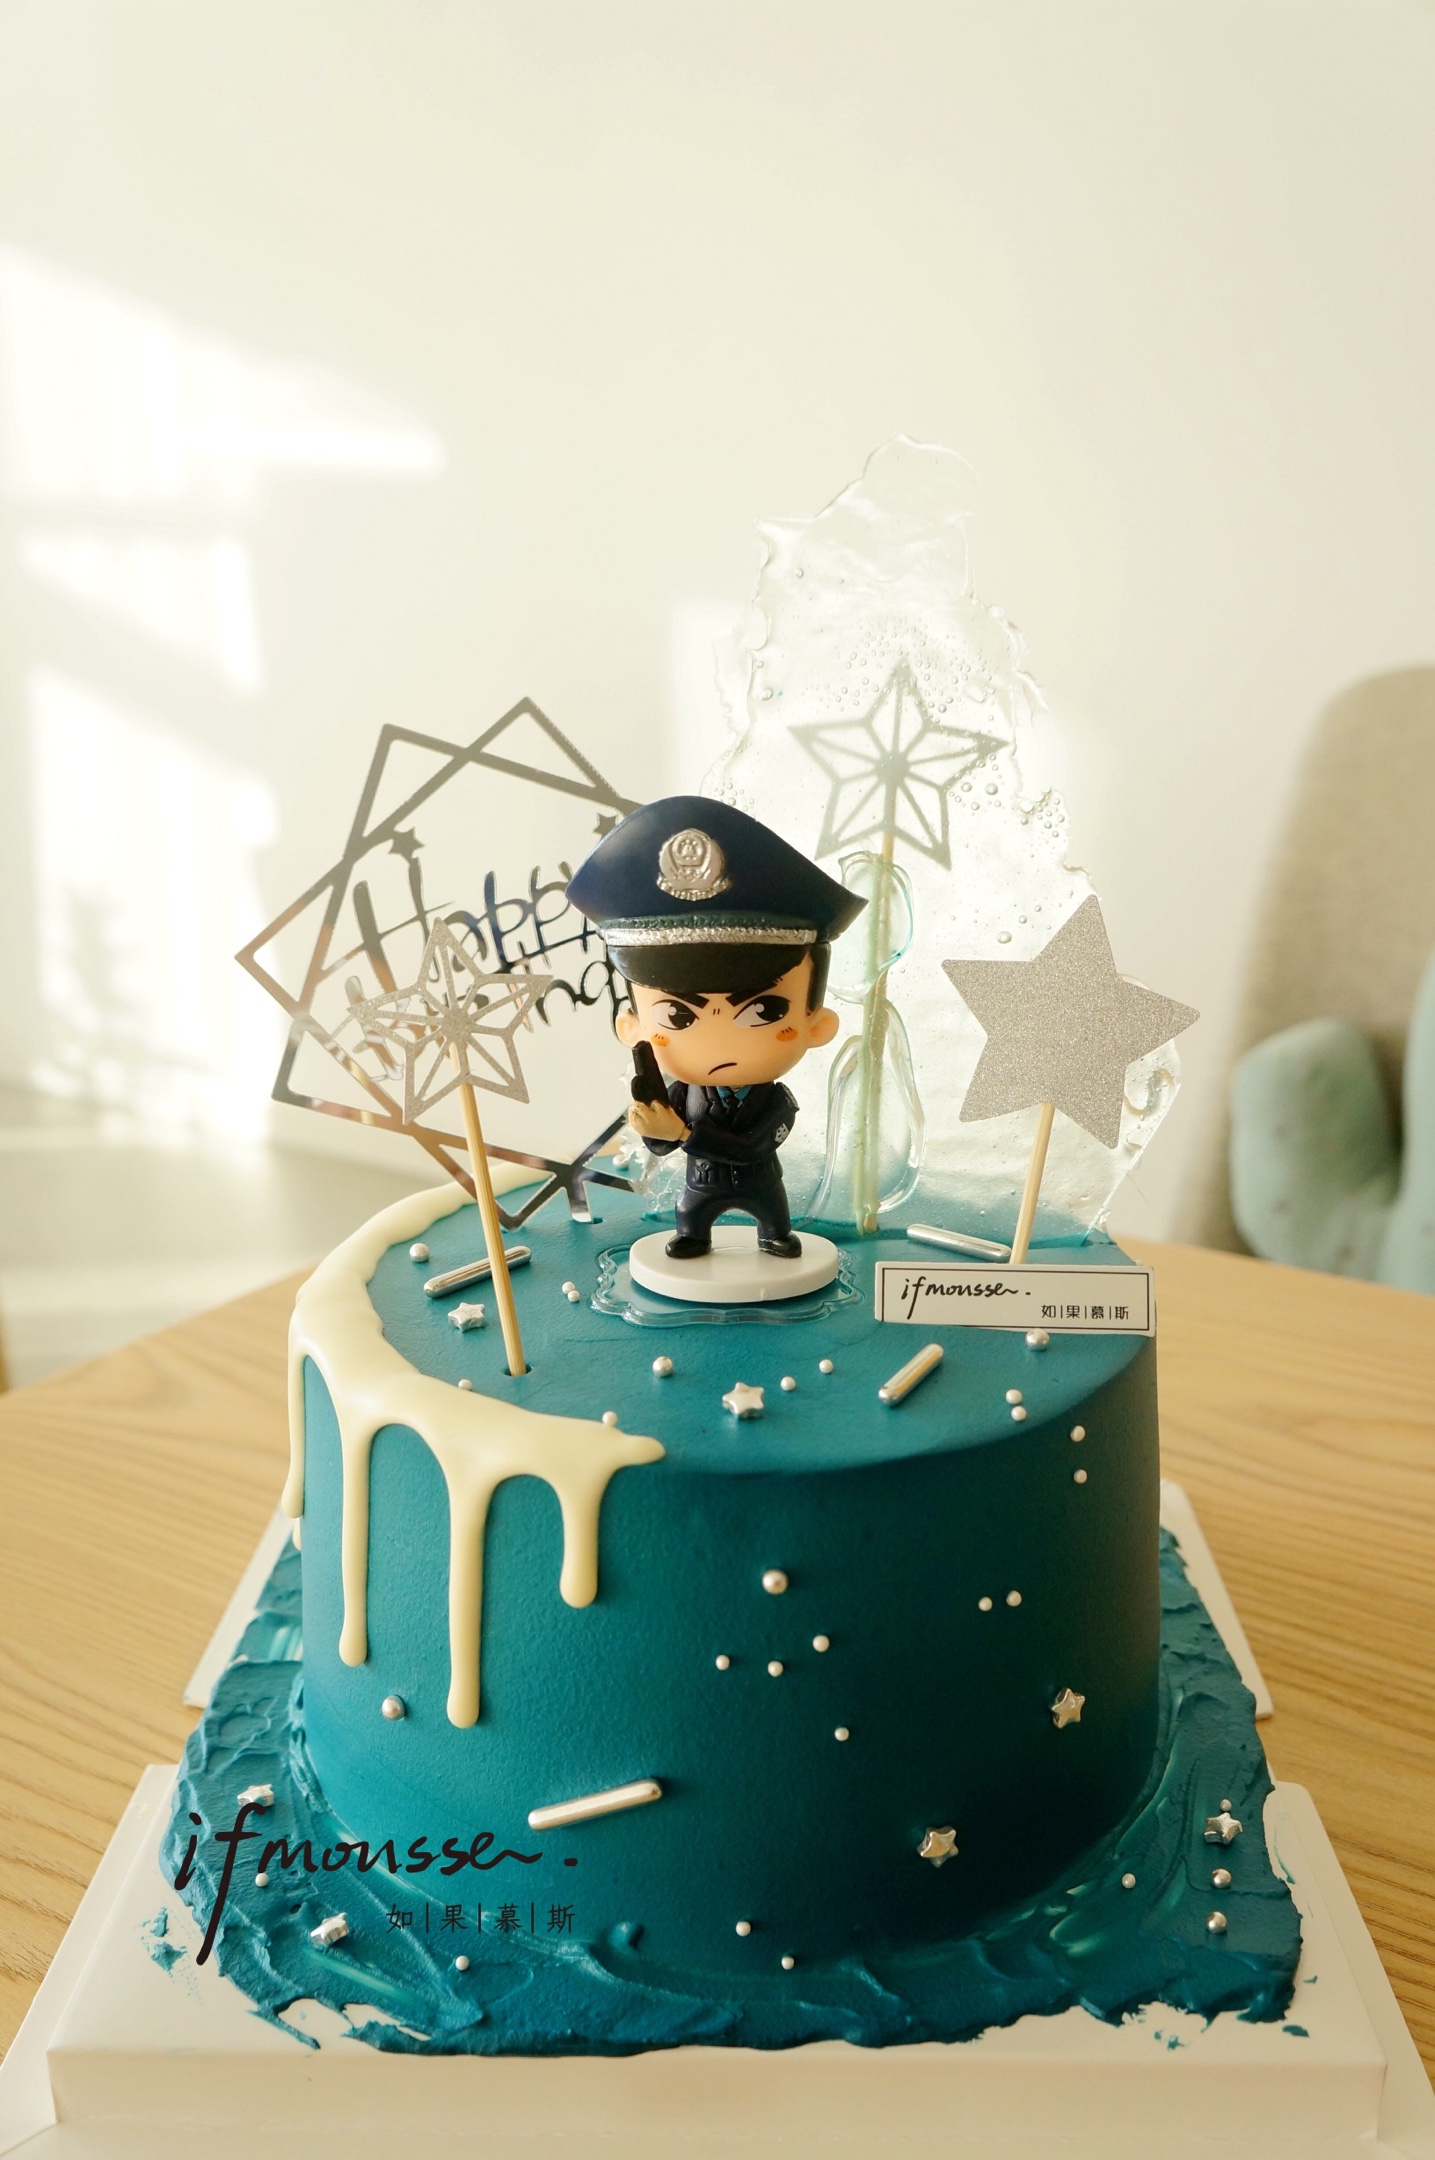 110警察节蛋糕造型 - 抖音